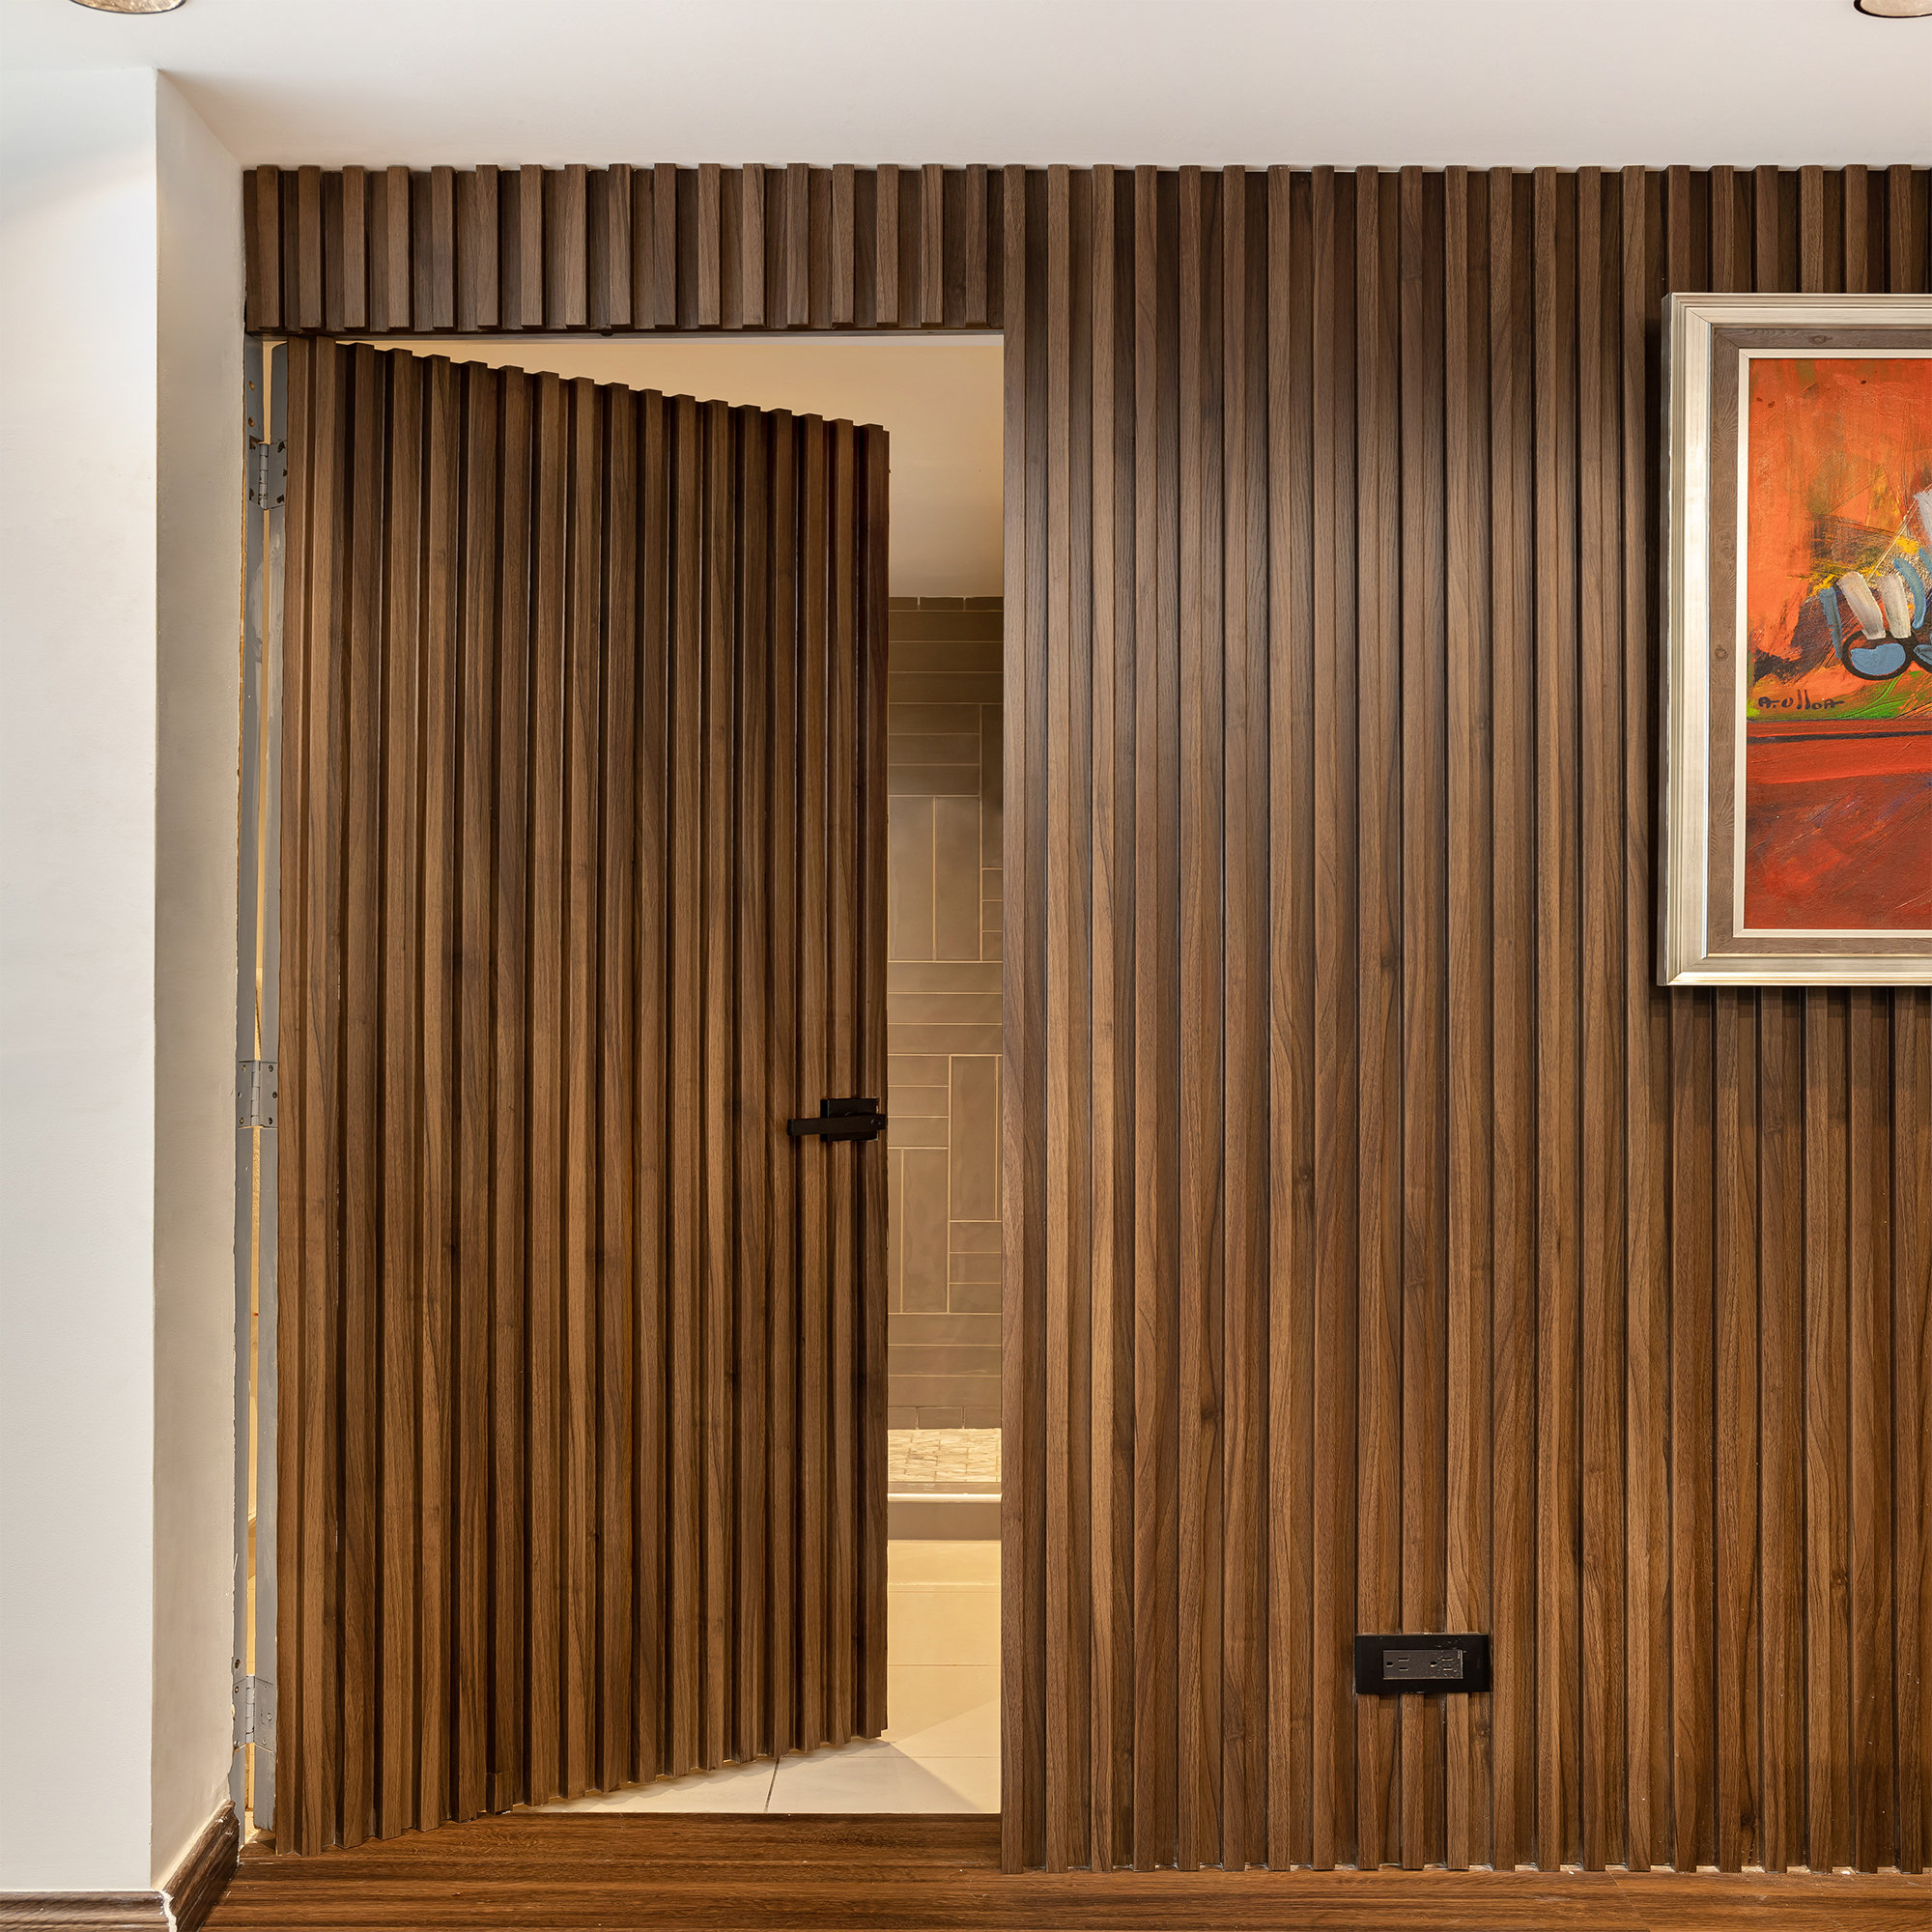 Oak Wooden Wall Slats Narrow Size 3D Wall Panels Wooden Slats Wood Decor  Room Interior Decorative Wood Panels Wooden Wall Slat 